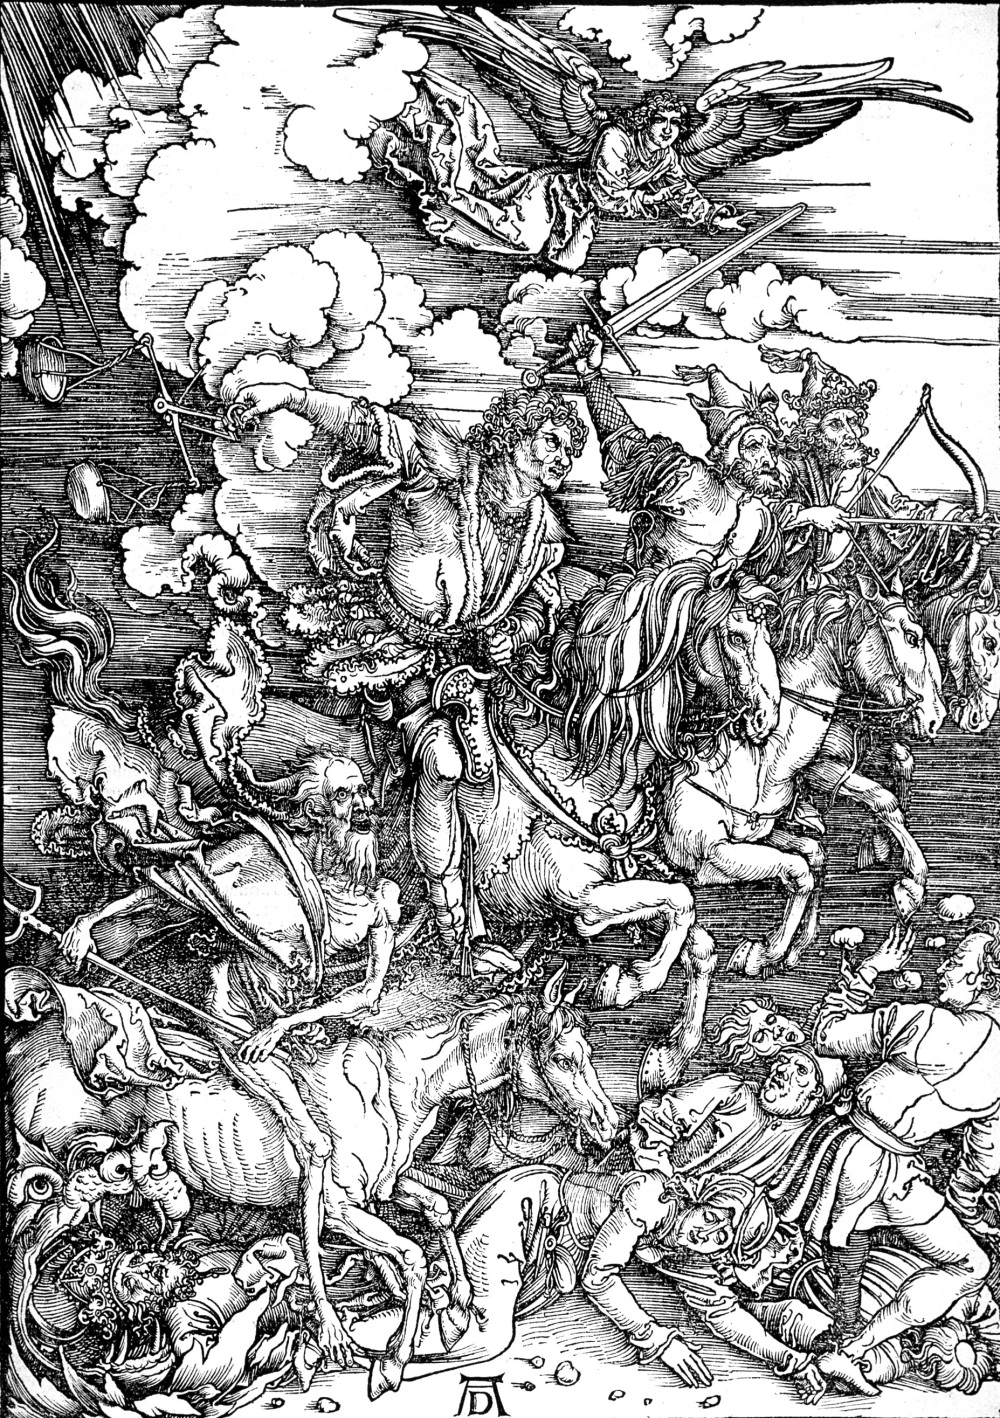 Four Horsemen of the Apocalypse--Albrecht Durer